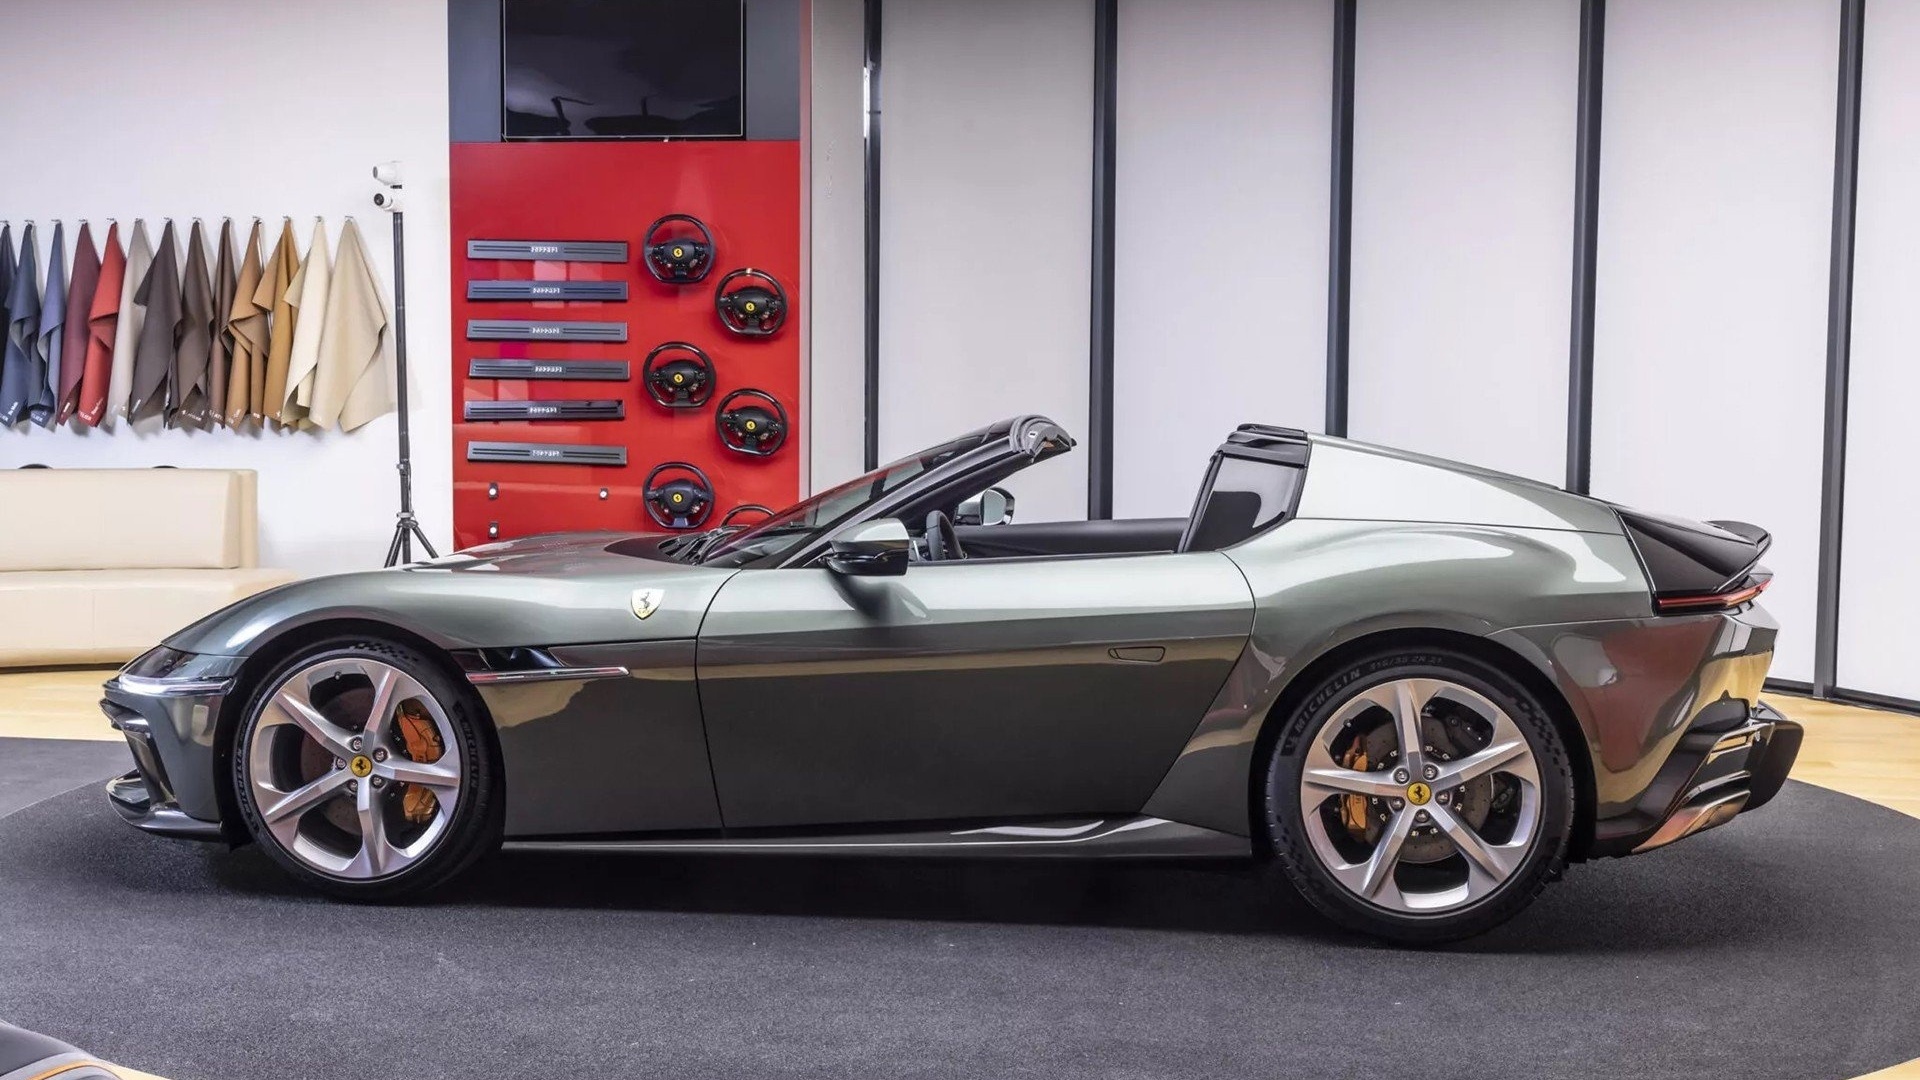 Cận cảnh Ferrari 12Cilindri được doanh nhân Quốc Cường 'chốt' mua qua Facebook